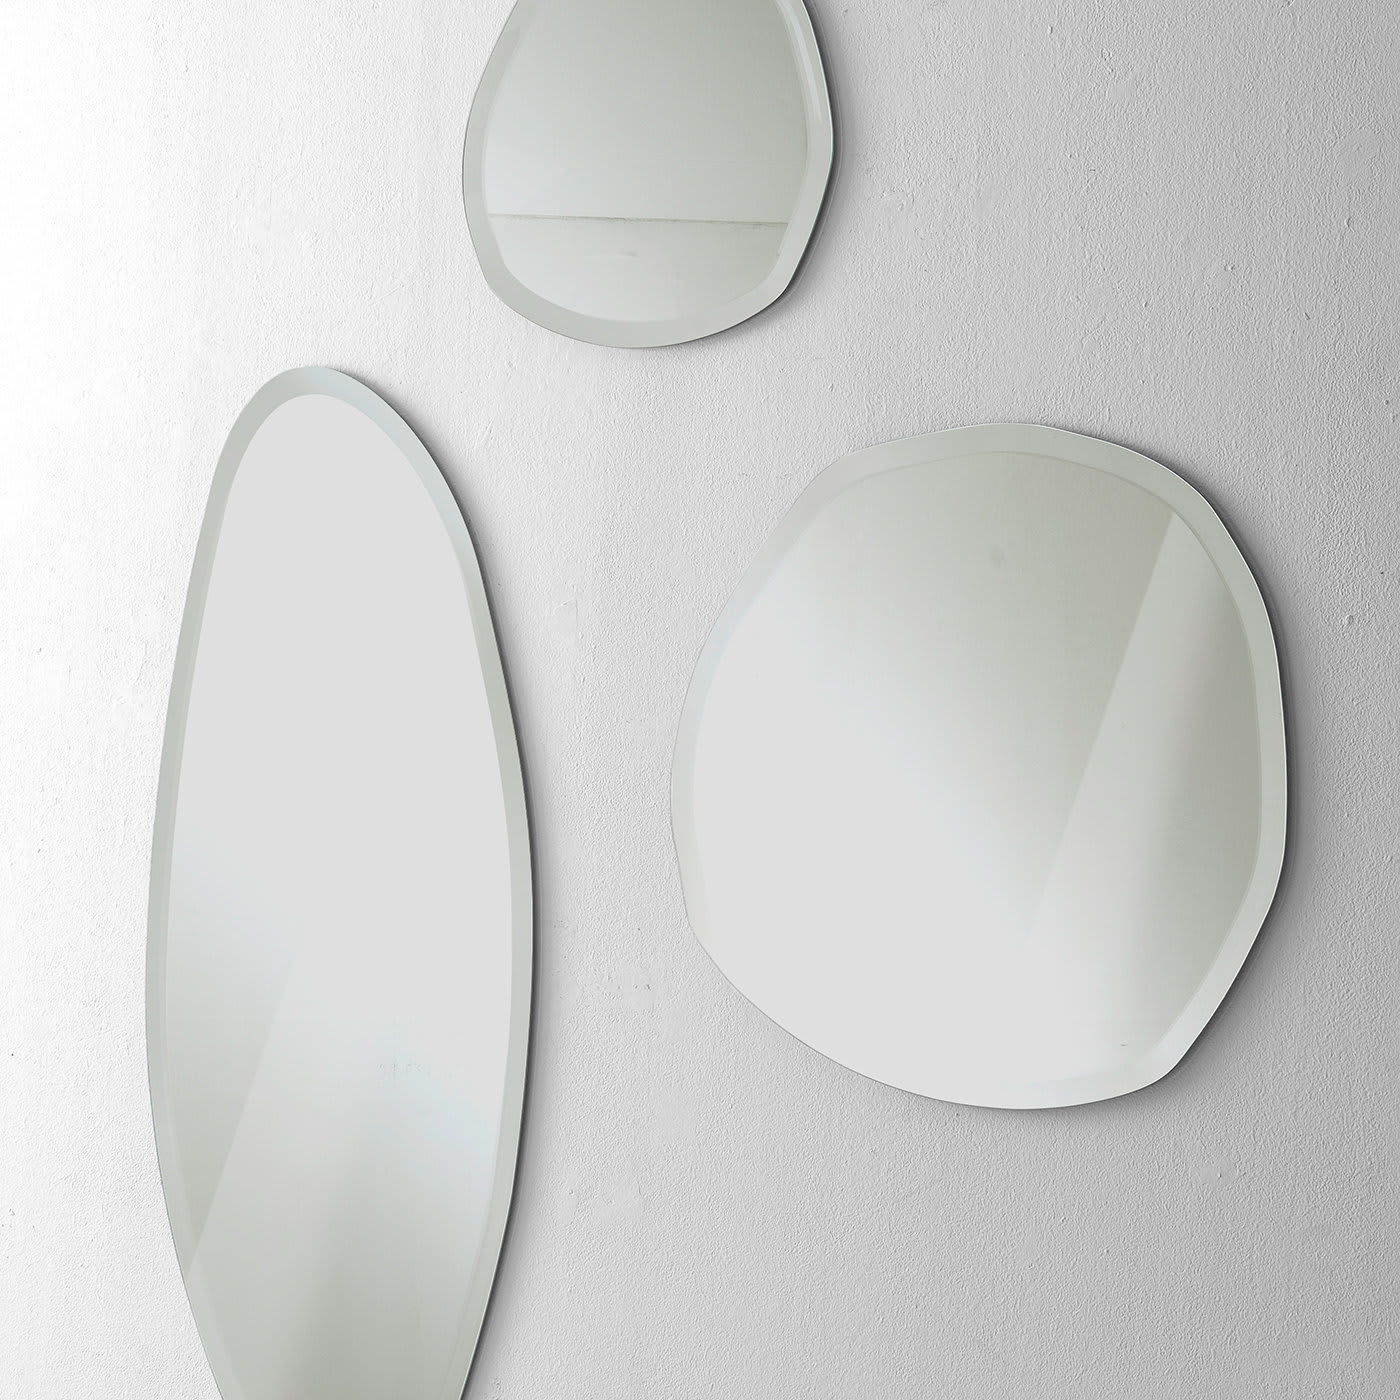 Stone Wall Mirror #1 by Norberto Delfinetti - Pacini & Cappellini